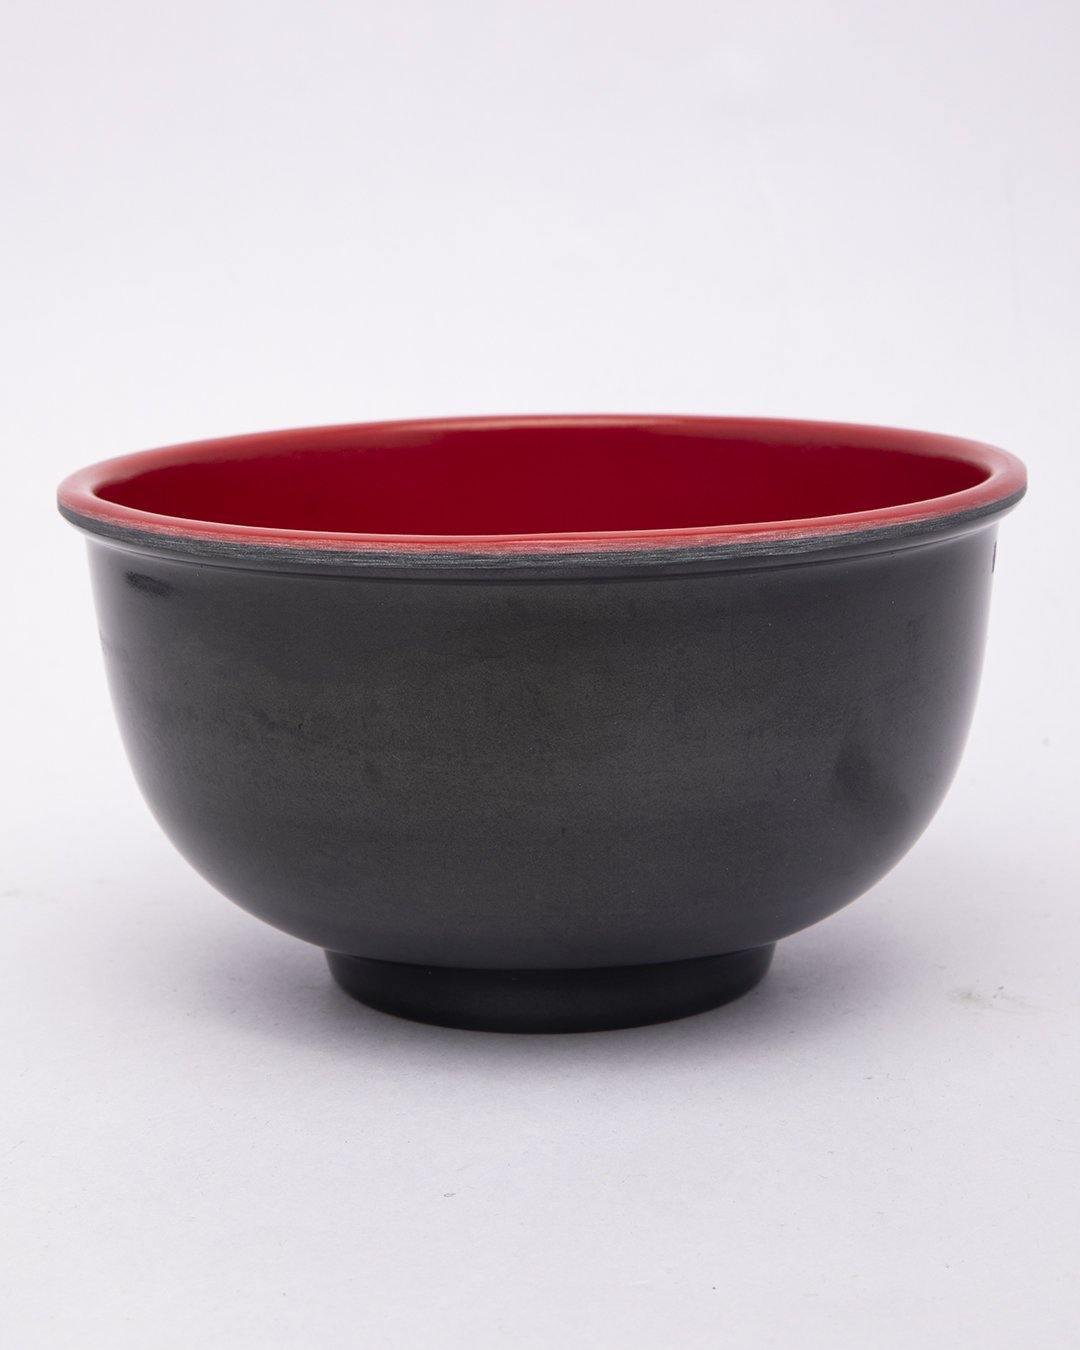 Bowls, for Serving, Black & Red, Plastic, Set of 3 - MARKET 99